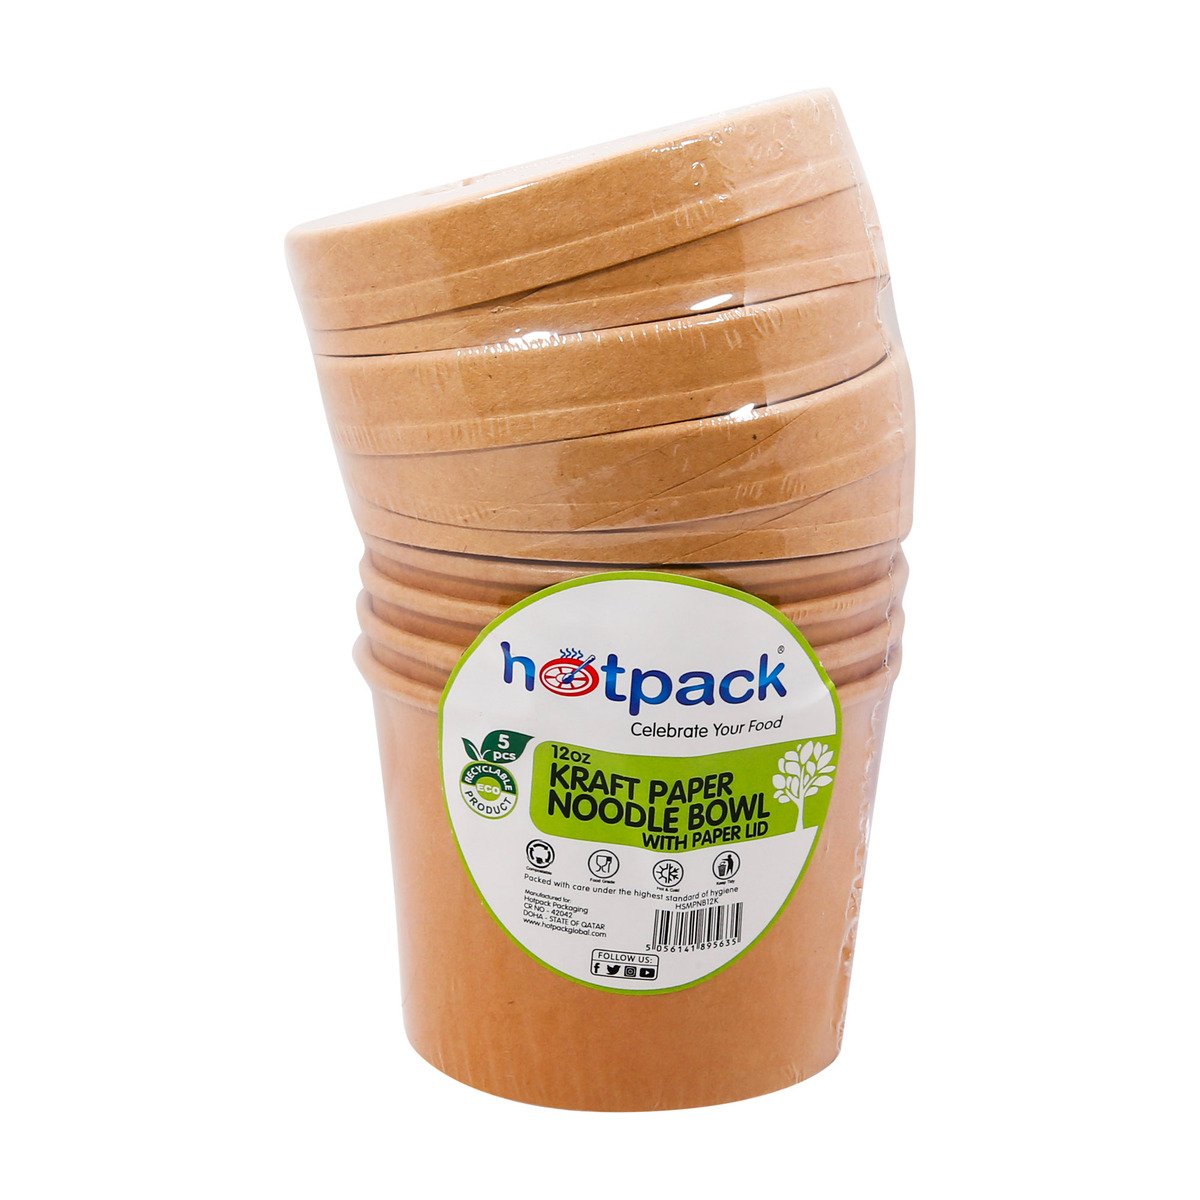 Hotpack Kraft Paper Noodle Bowl with Paper LID 12oz 5pcs